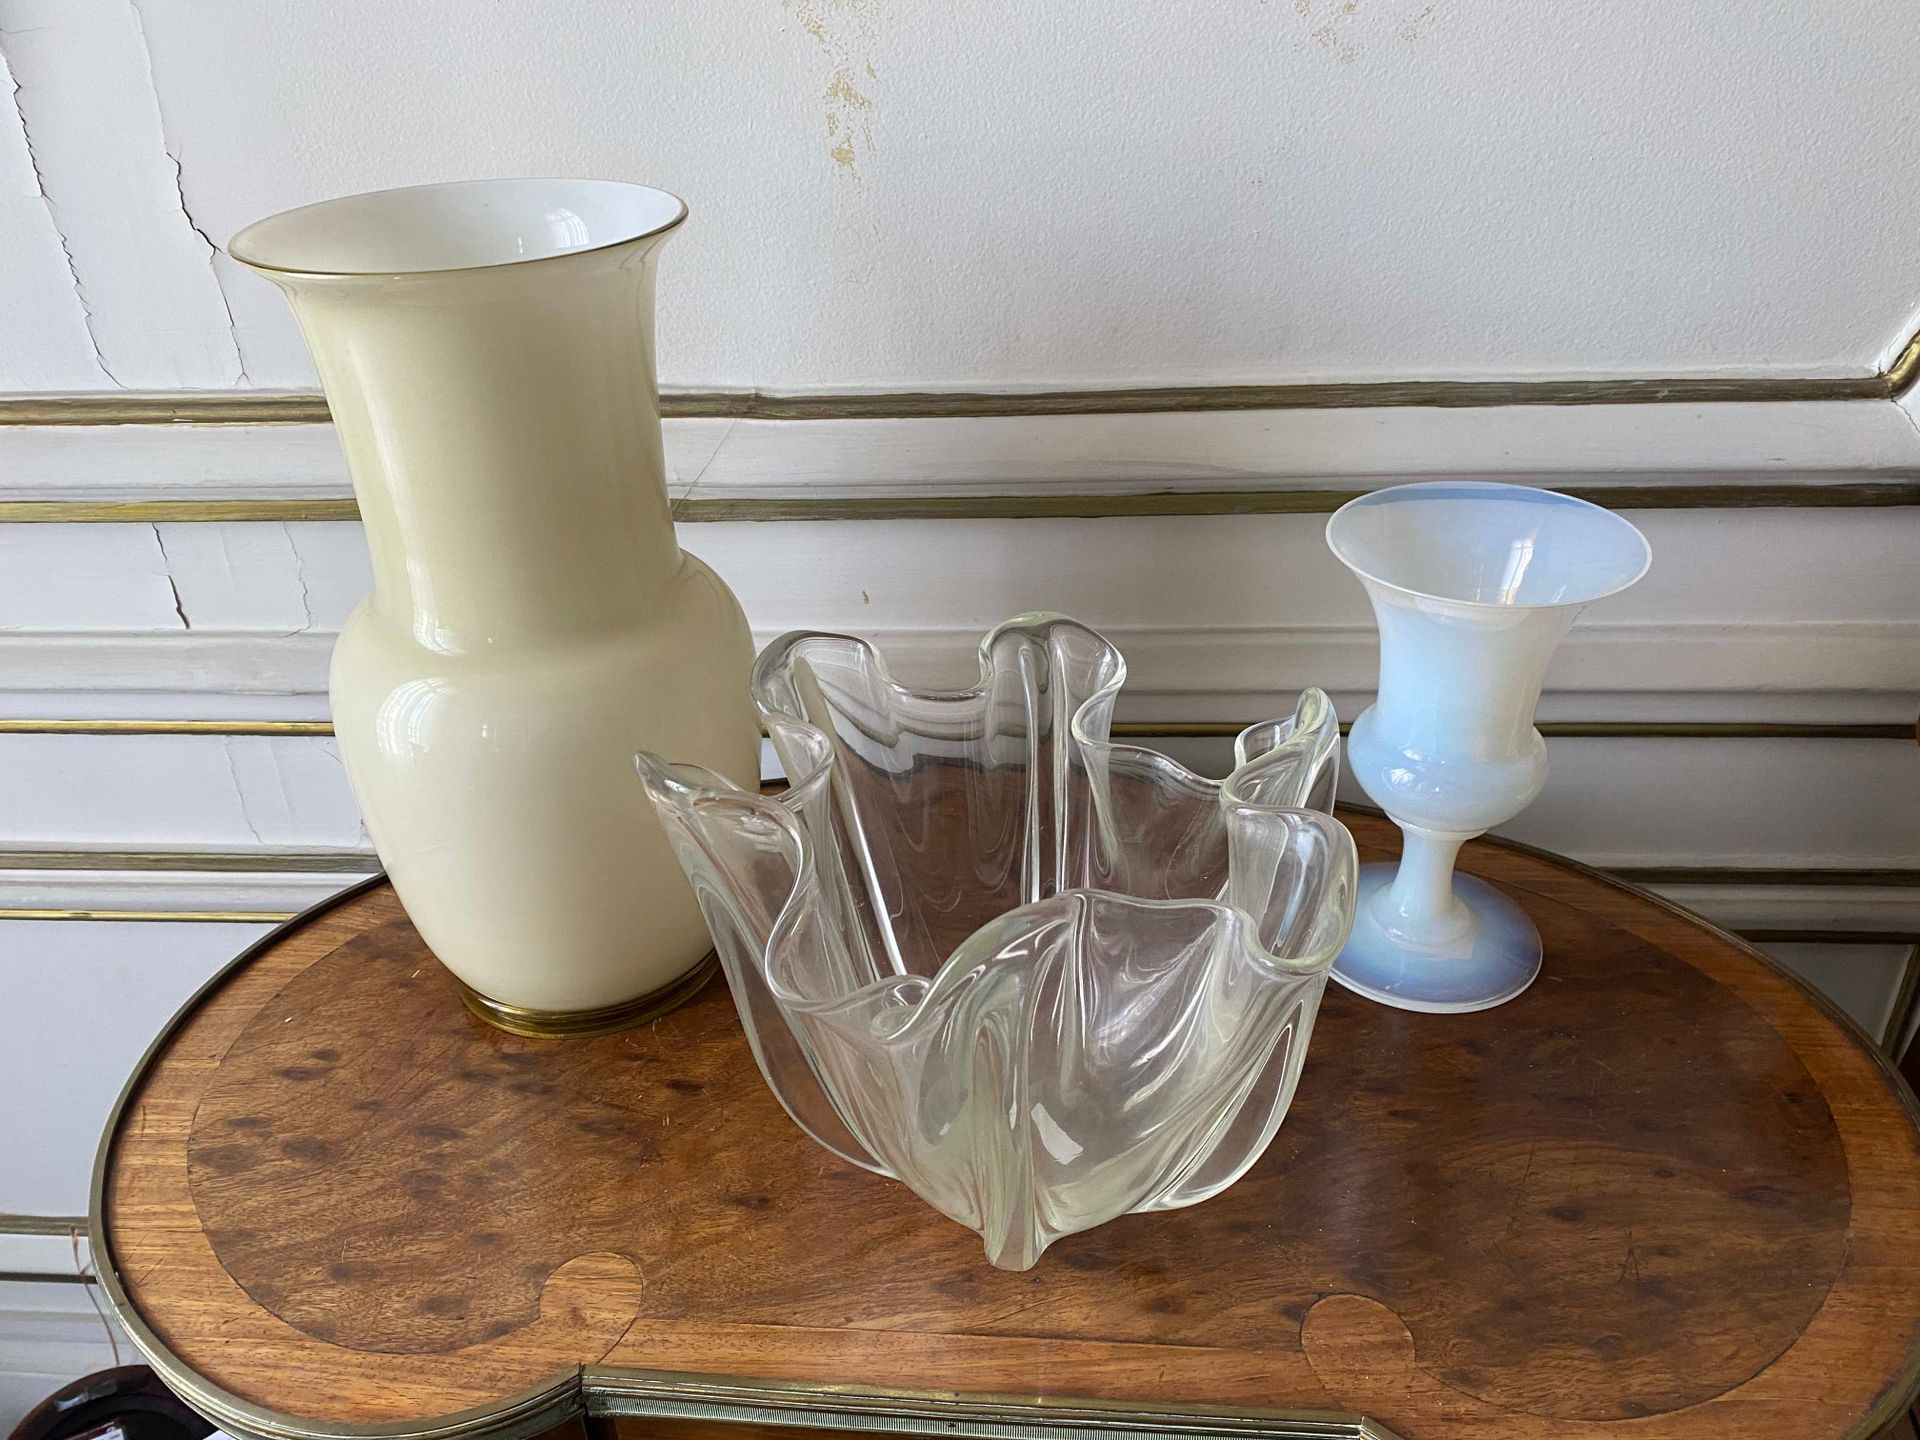 Null Set bestehend aus drei Vasen.

H. : 36 cm (für die größte)